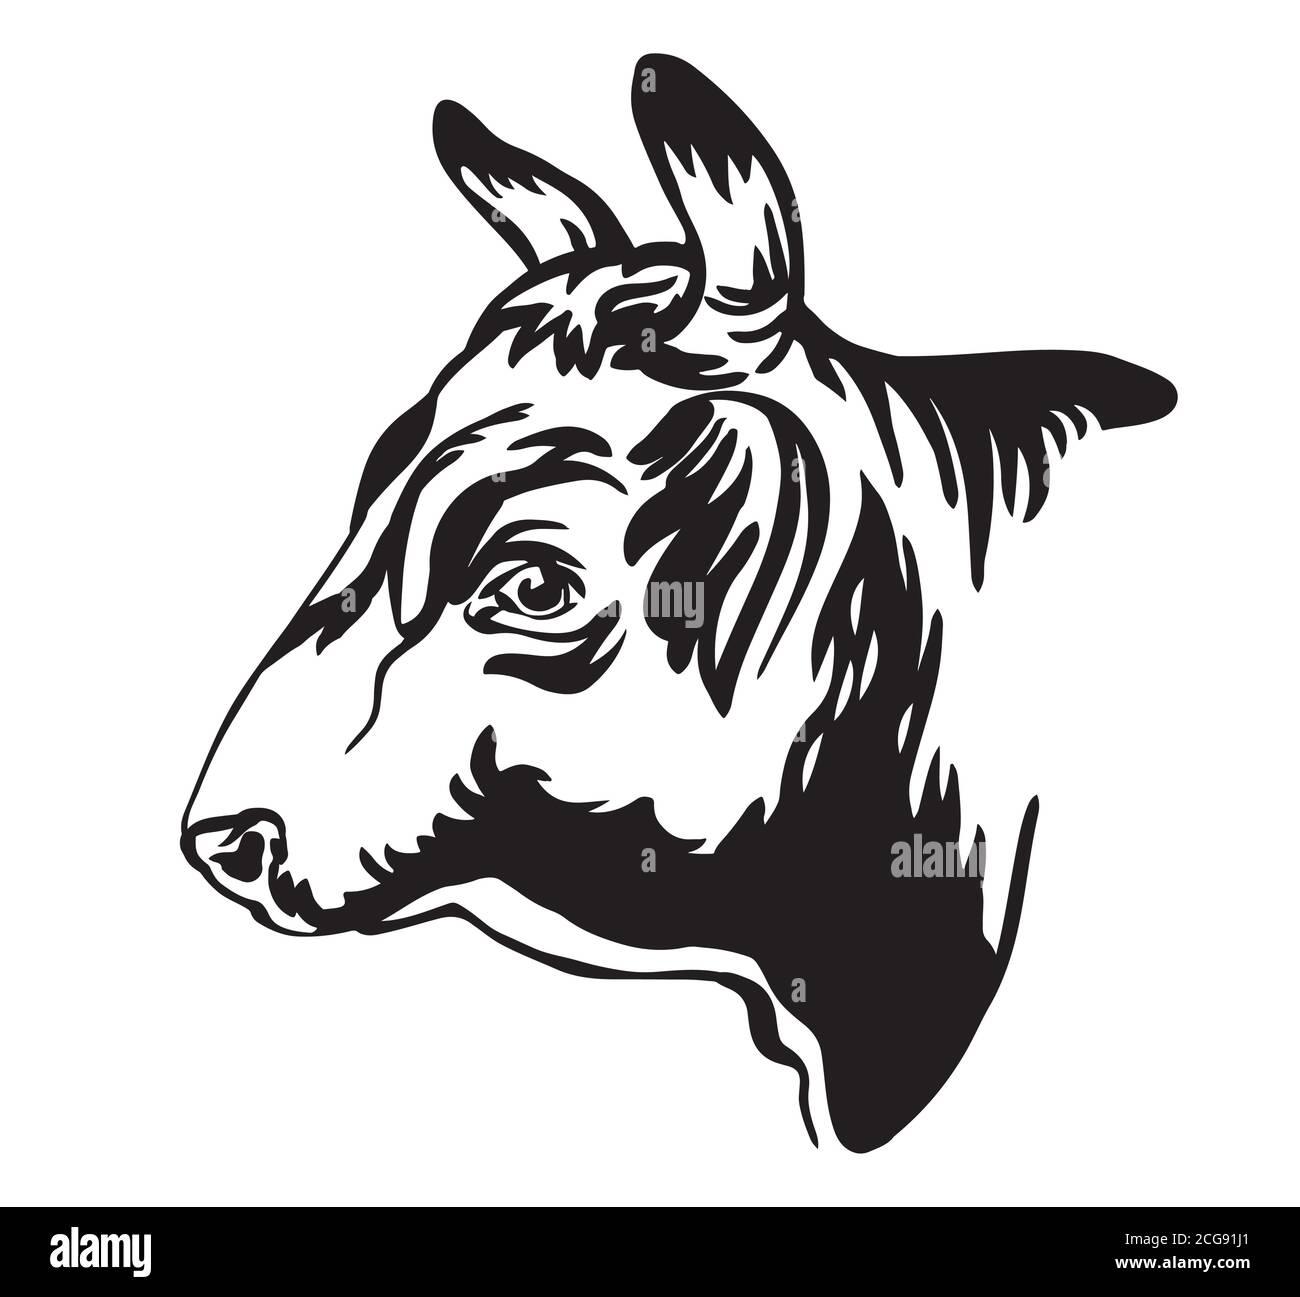 Illustration vectorielle de l'icône en forme de tête de taureau de couleur noire isolée sur fond blanc. Image de gabarit de gravure de la vache. Élément design pour affiche, t-shirt Illustration de Vecteur